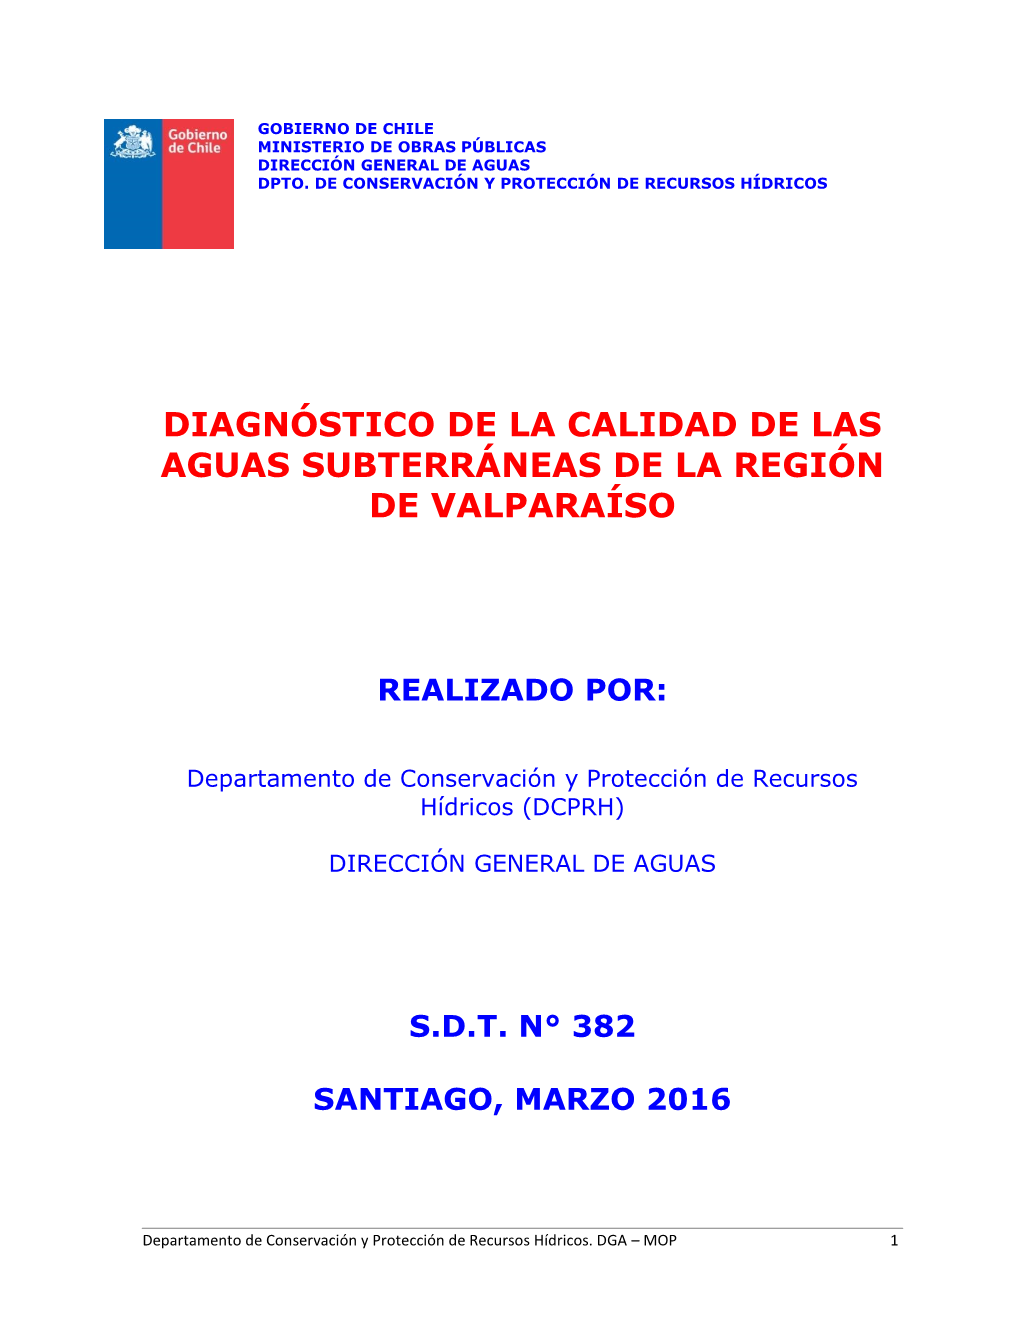 Diagnóstico De La Calidad De Las Aguas Subterráneas De La Región De Valparaíso